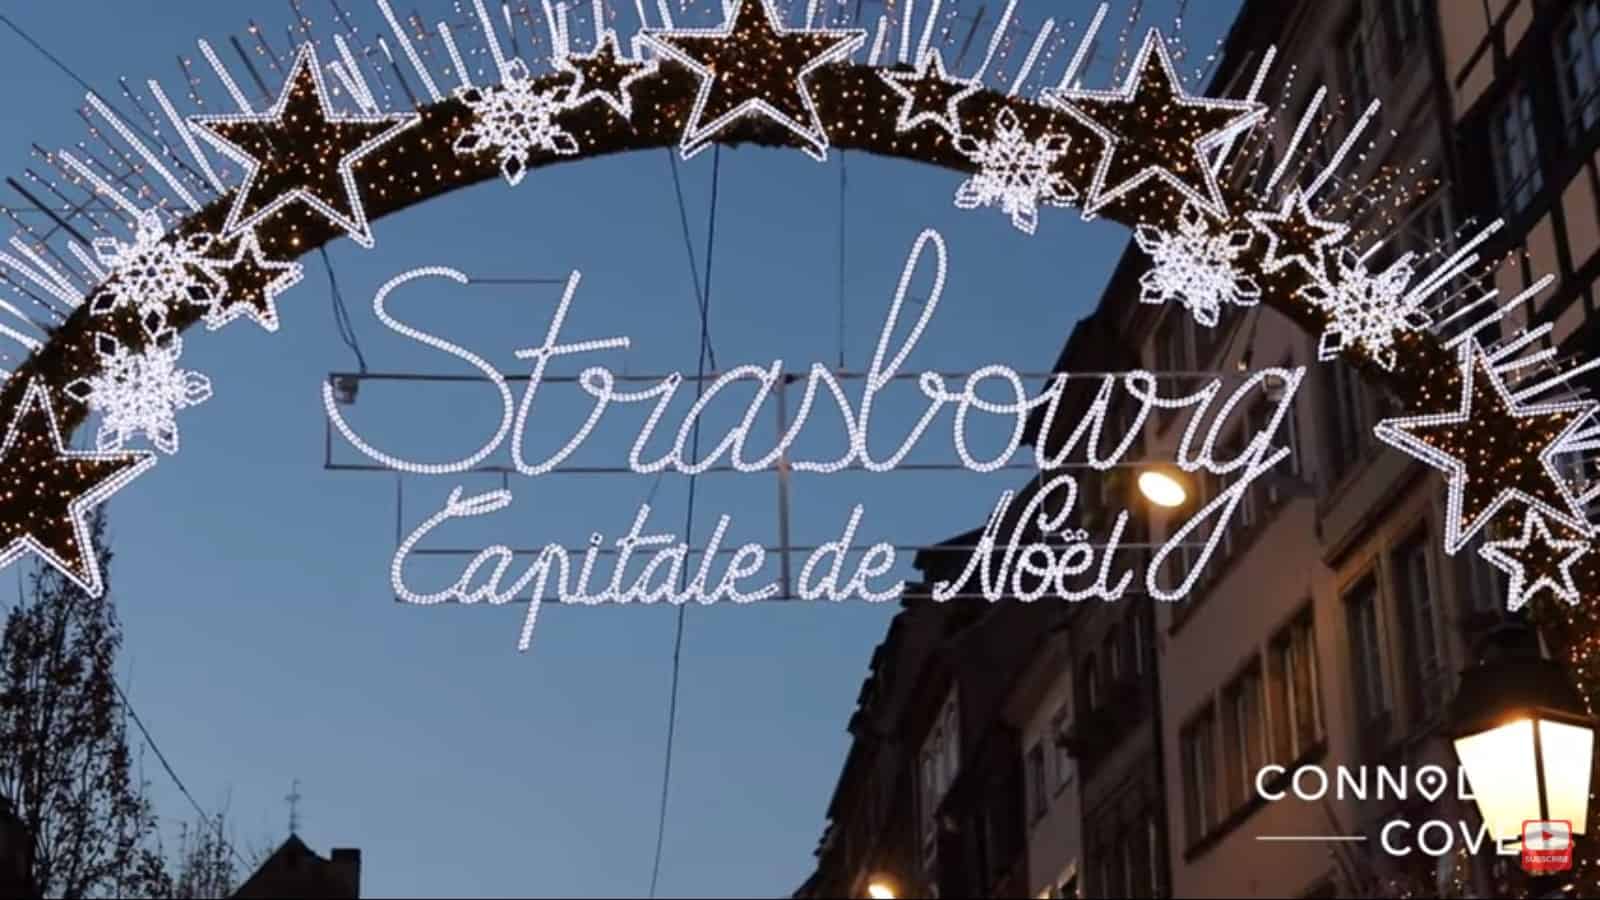 Strasbourg, Capitale de Noel